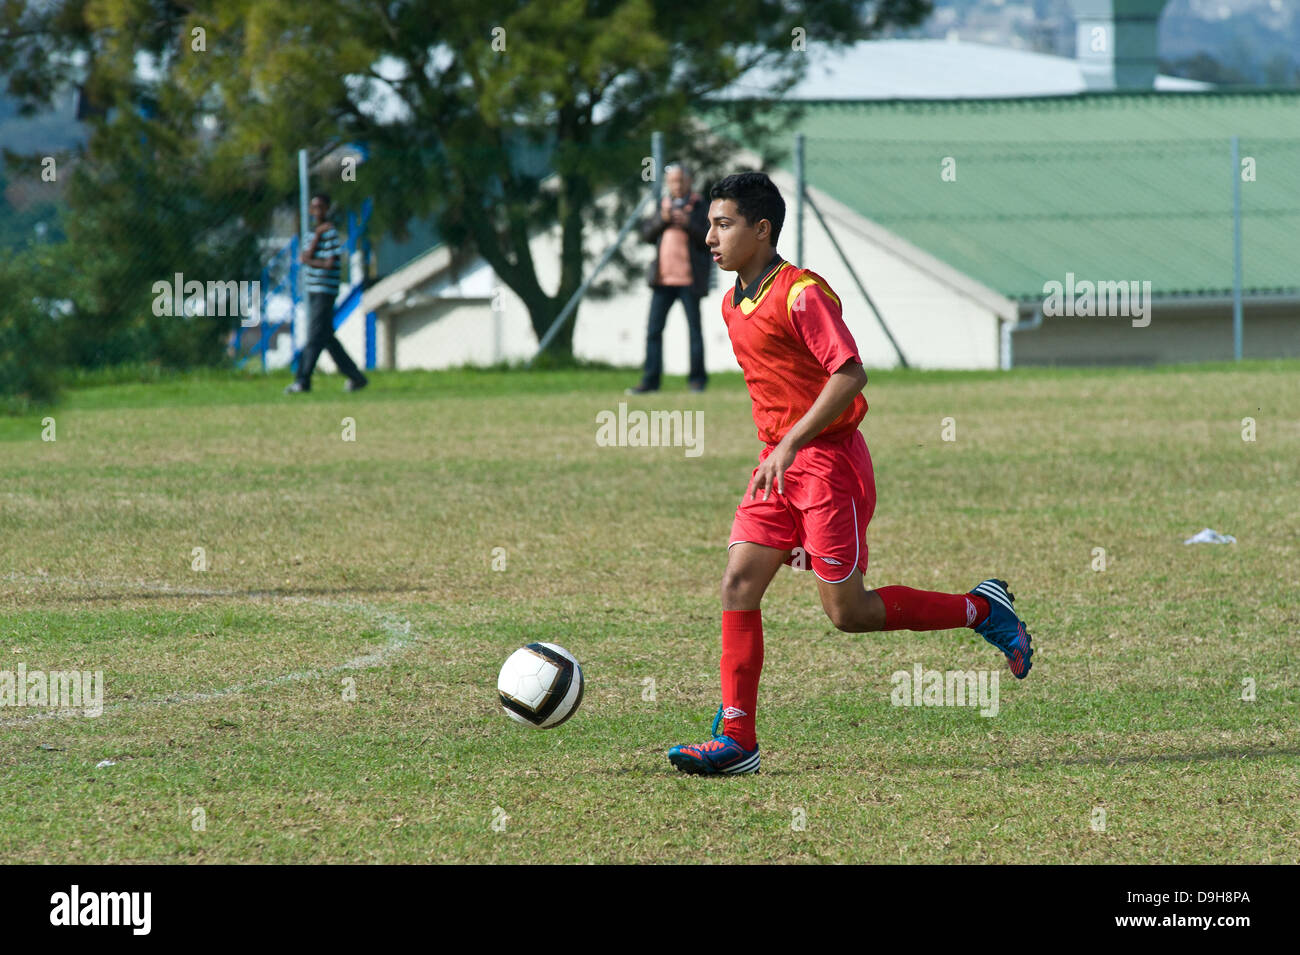 U15 joueur de football junior dans un match de championnat, Le Cap, Afrique du Sud Banque D'Images